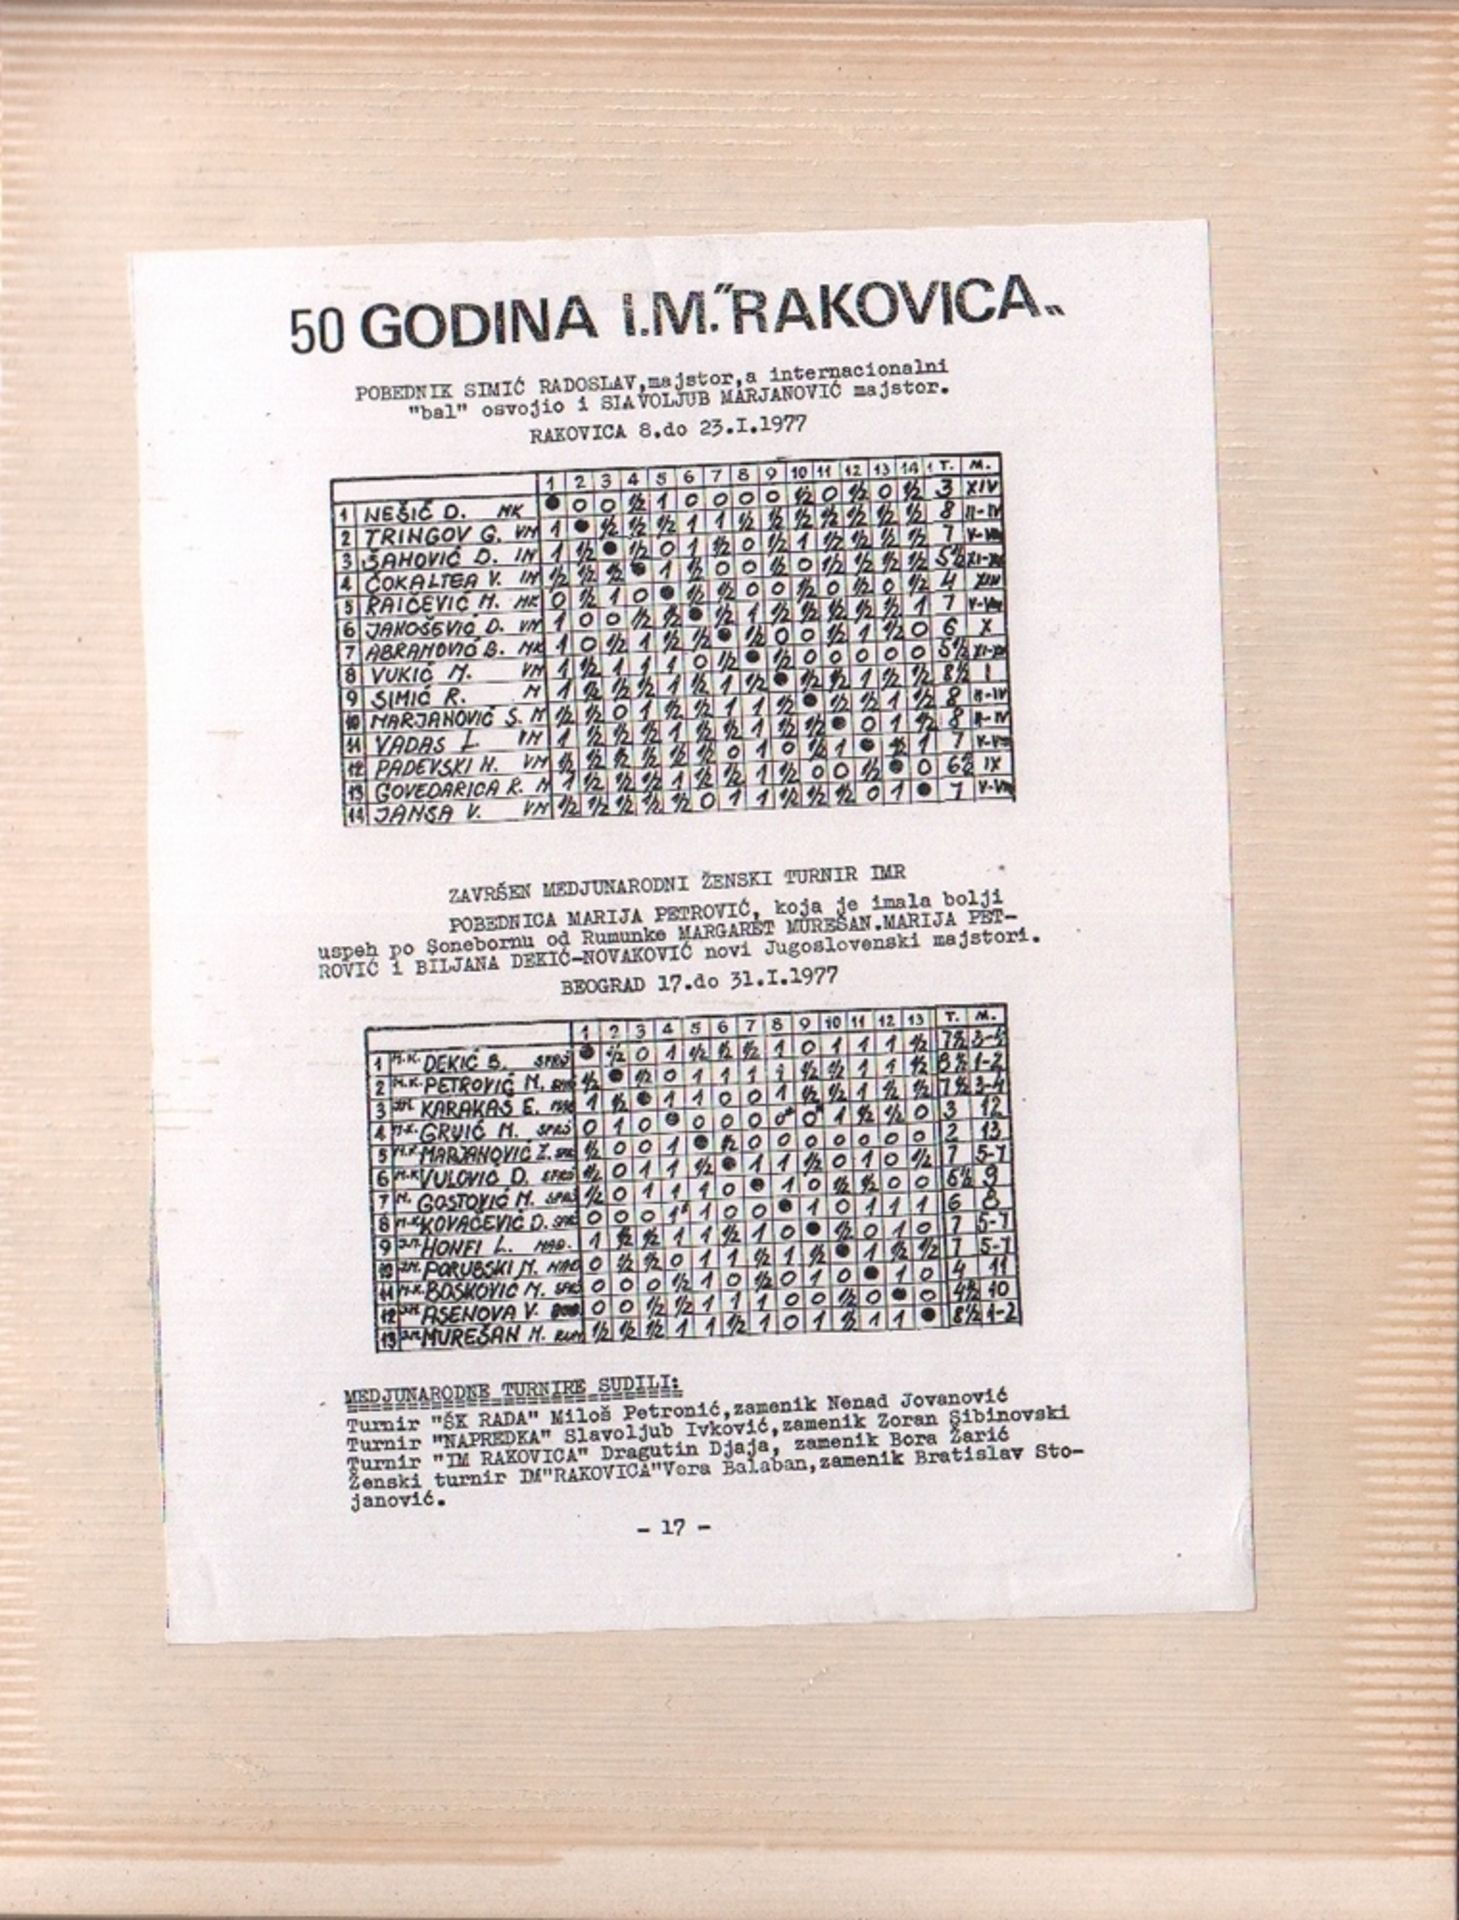 Foto. Rakovica 1977. Fotoalbum mit 24 schwarzweißen Fotos vom Turniergeschehen auf 10 Albumblättern. - Image 6 of 6